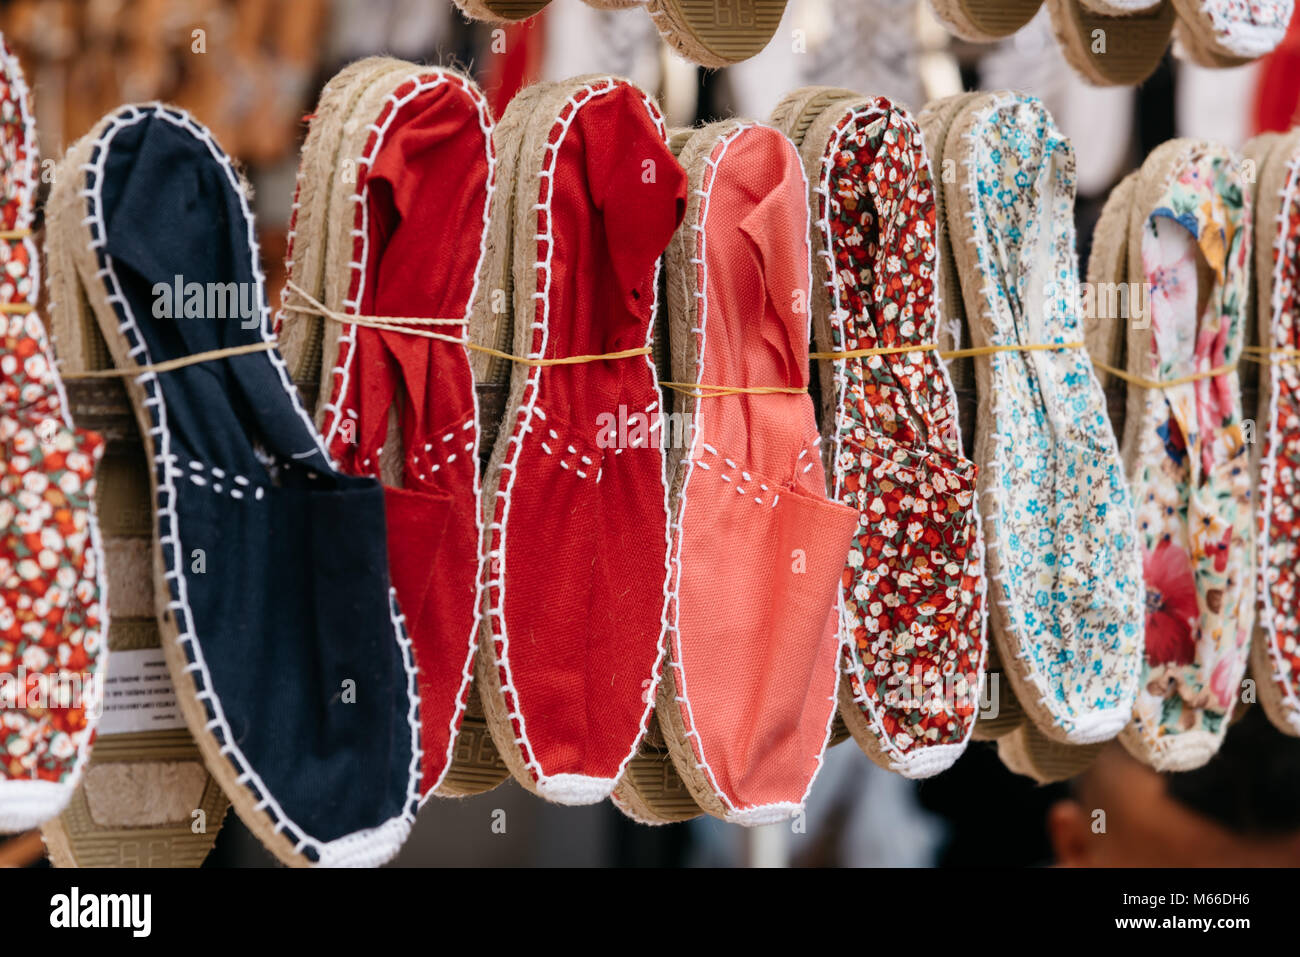 Spagnolo colorate a mano con suole di corda sandali o espadrilles in stallo del mercato Foto Stock